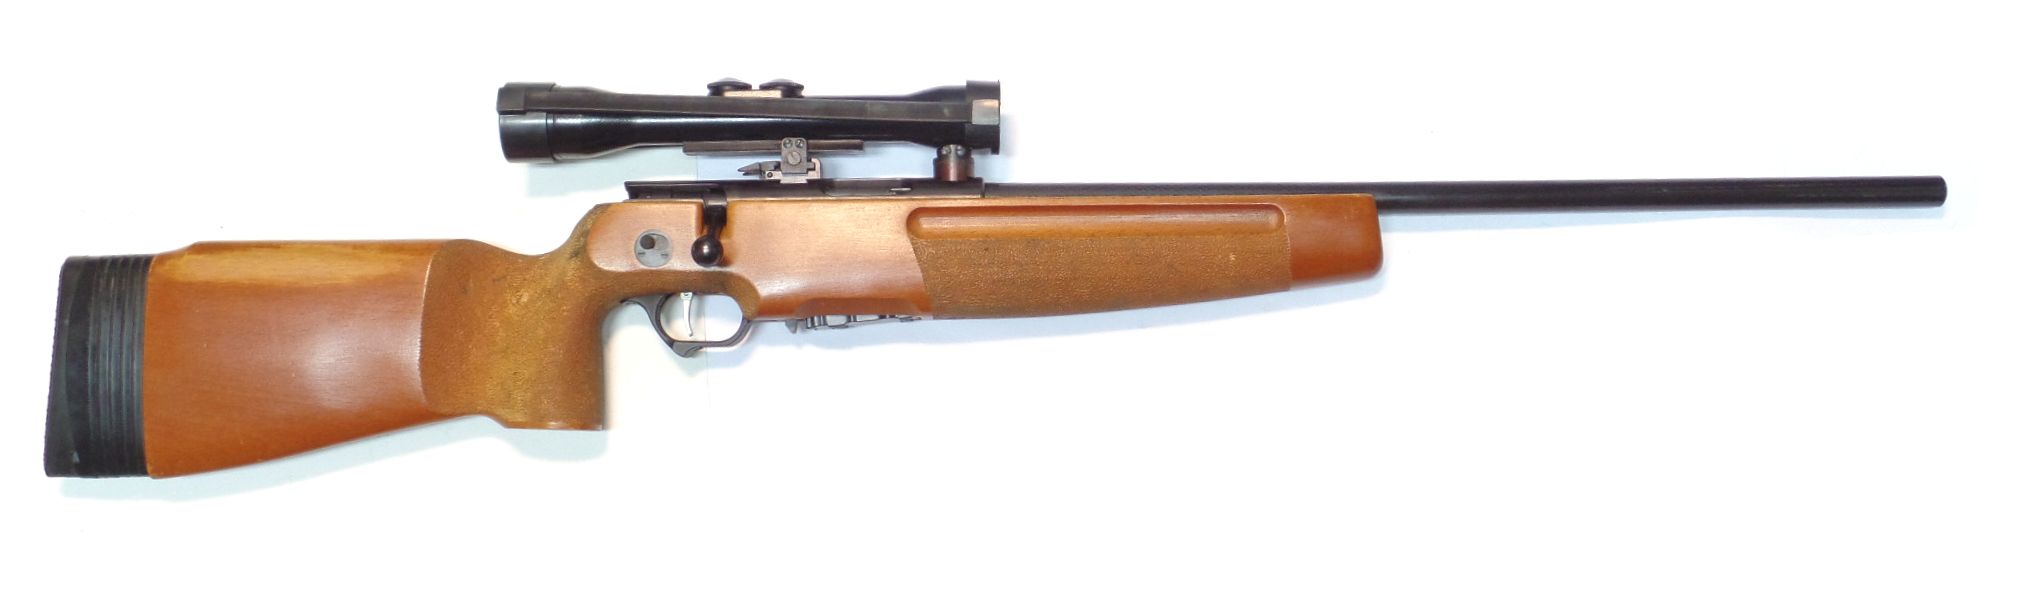 SSG 82 calibre 5.45x39